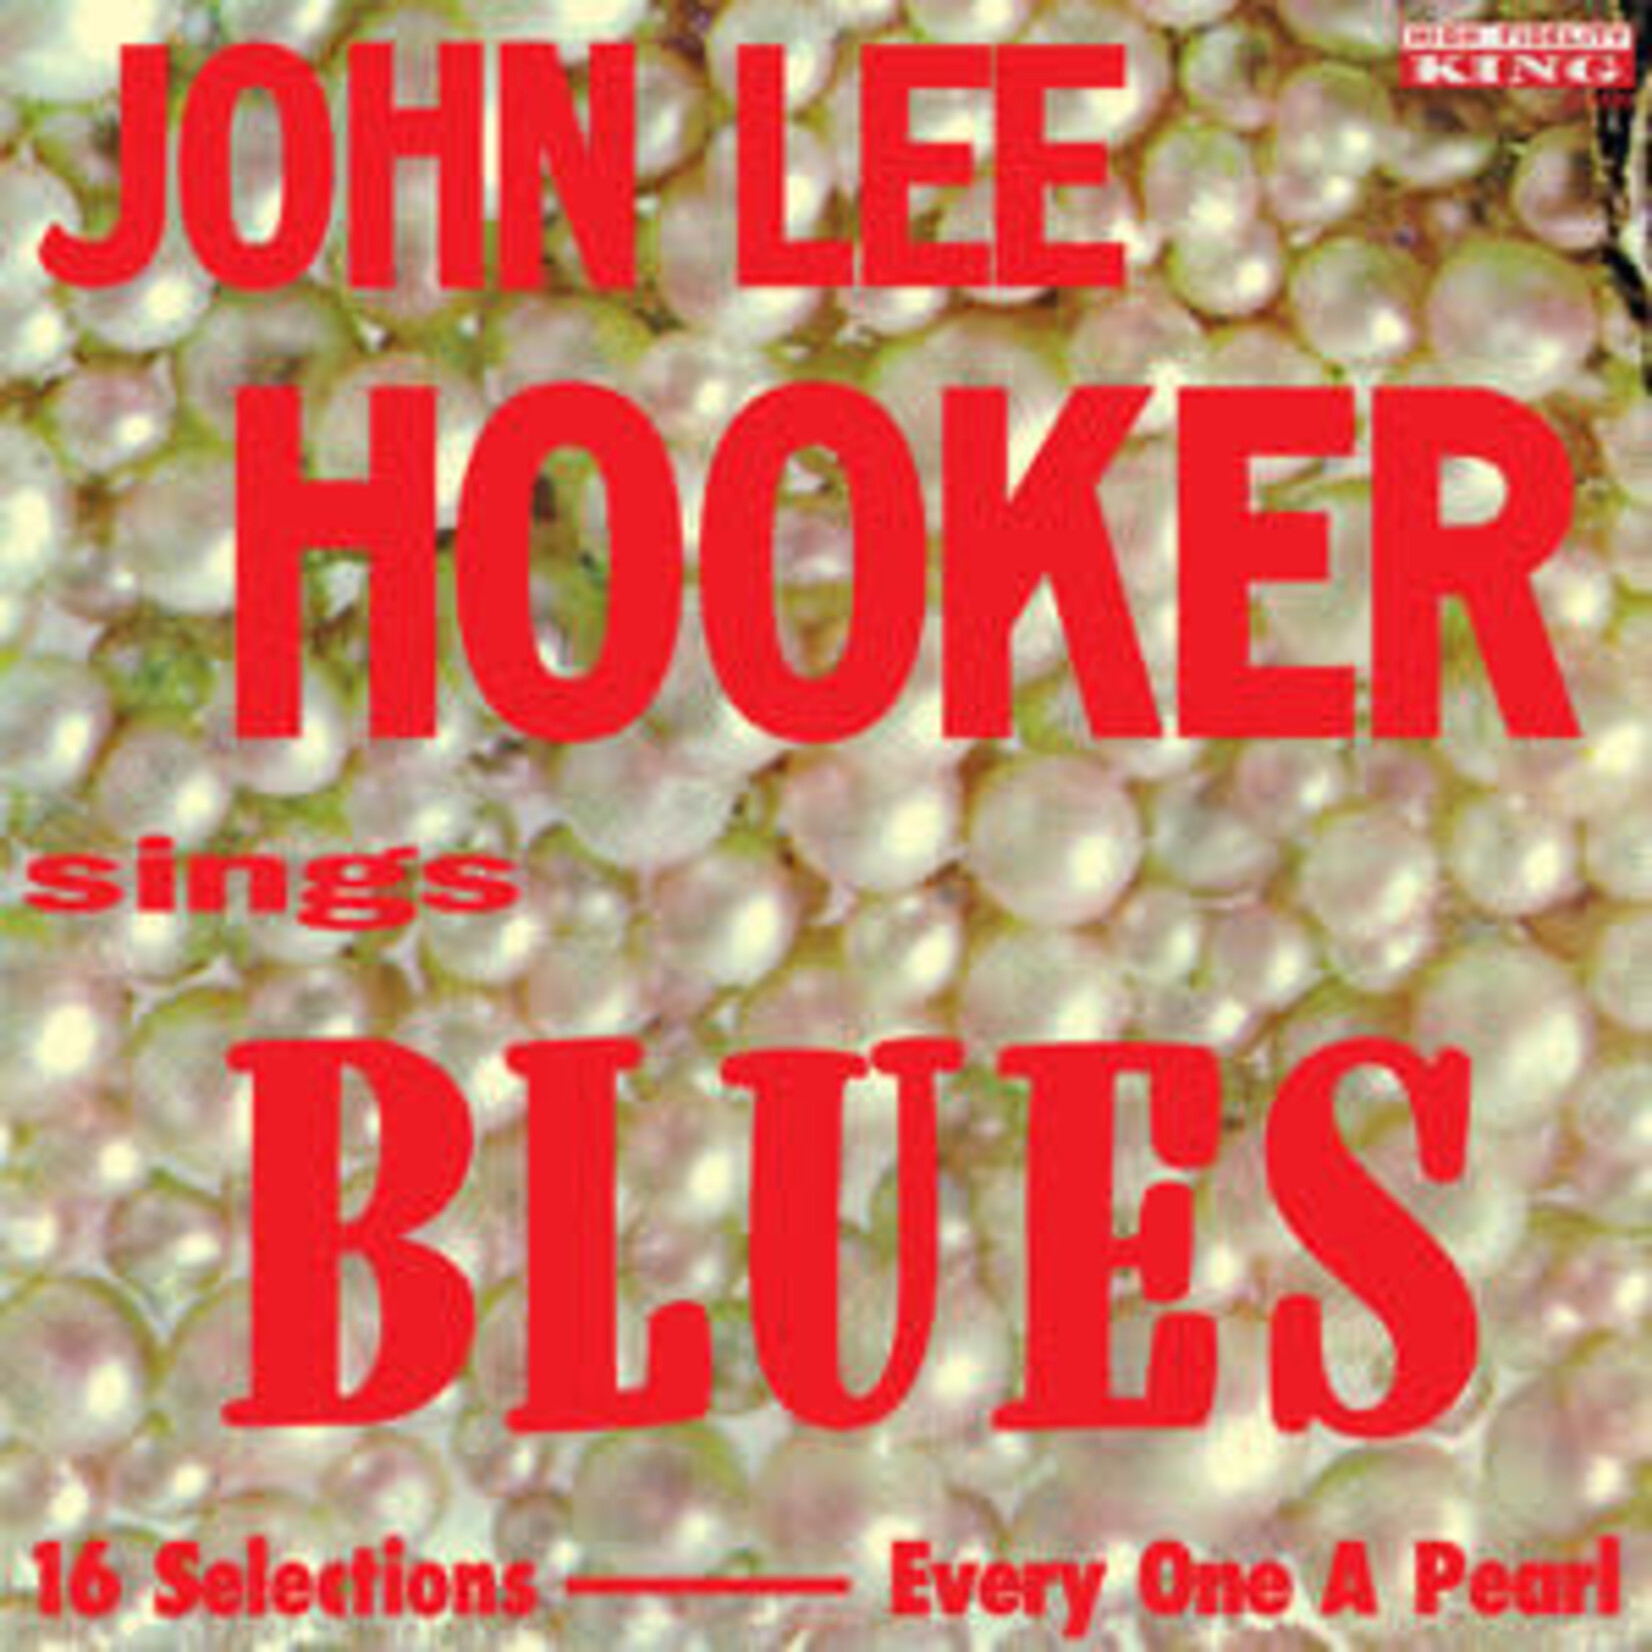 [New] Hooker, John Lee: John Lee Hooker Sings Blues [SUNDAZED]